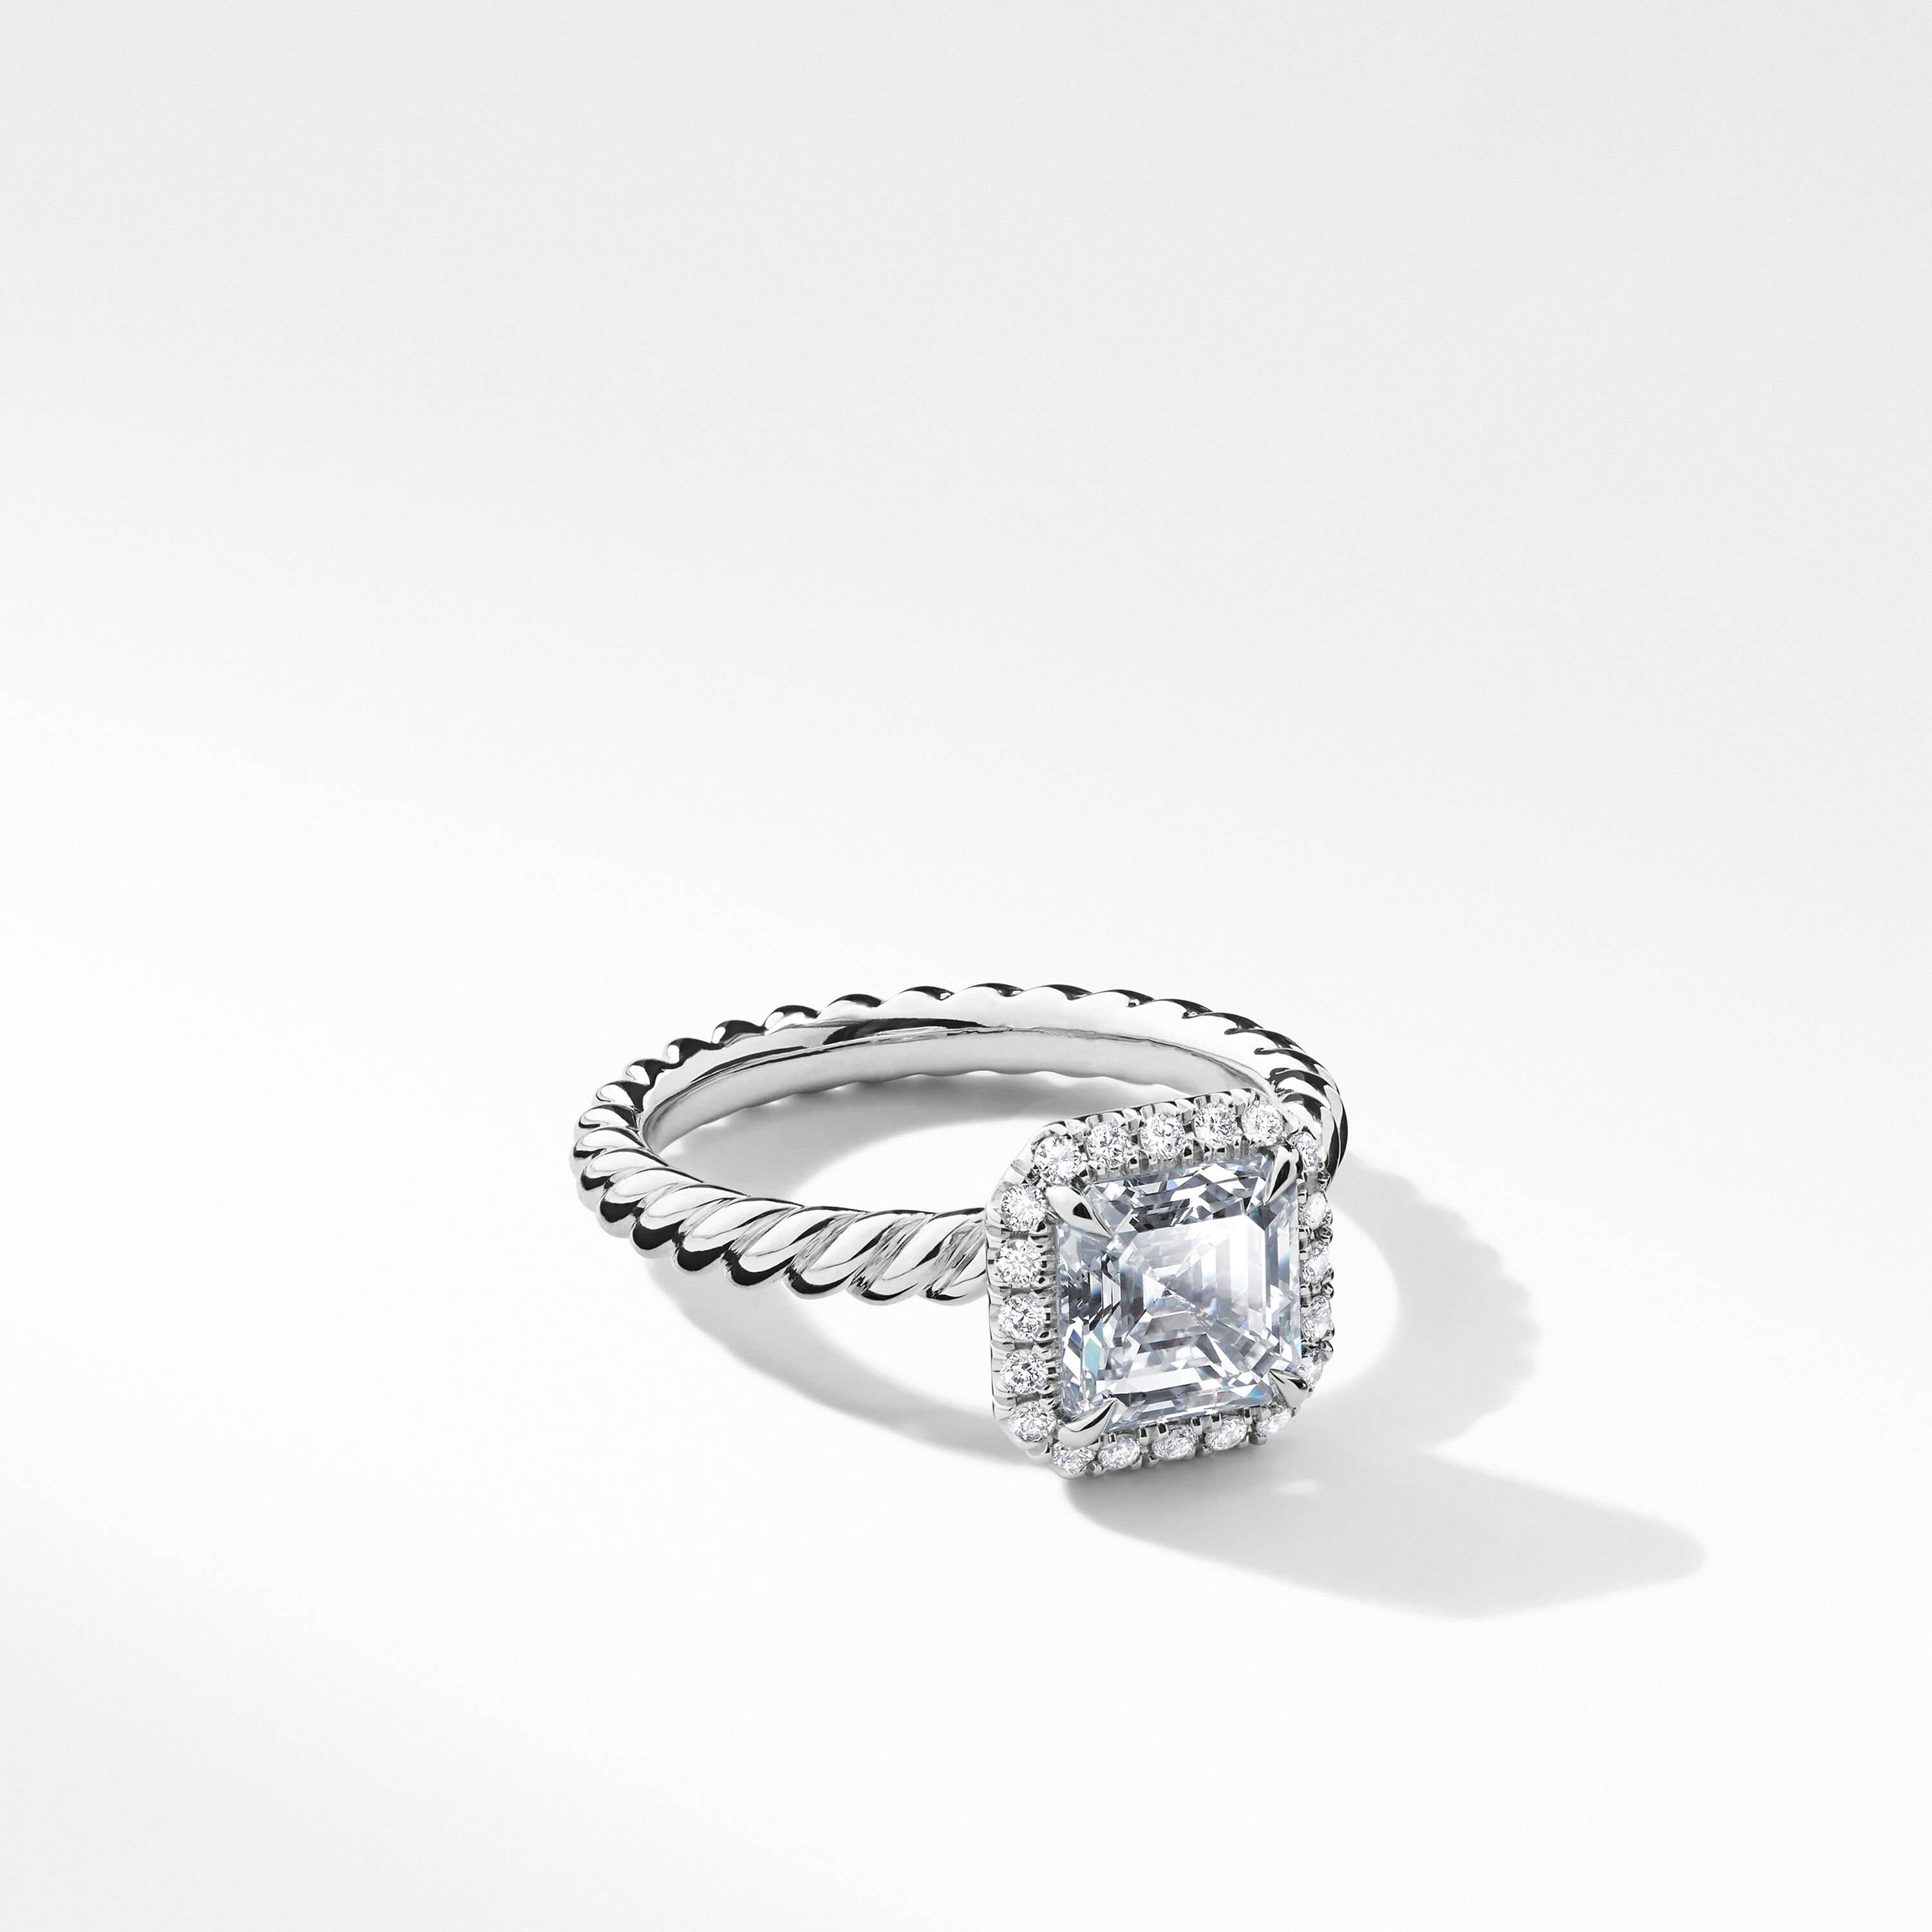 DY Capri® Engagement Ring in Platinum, Asscher